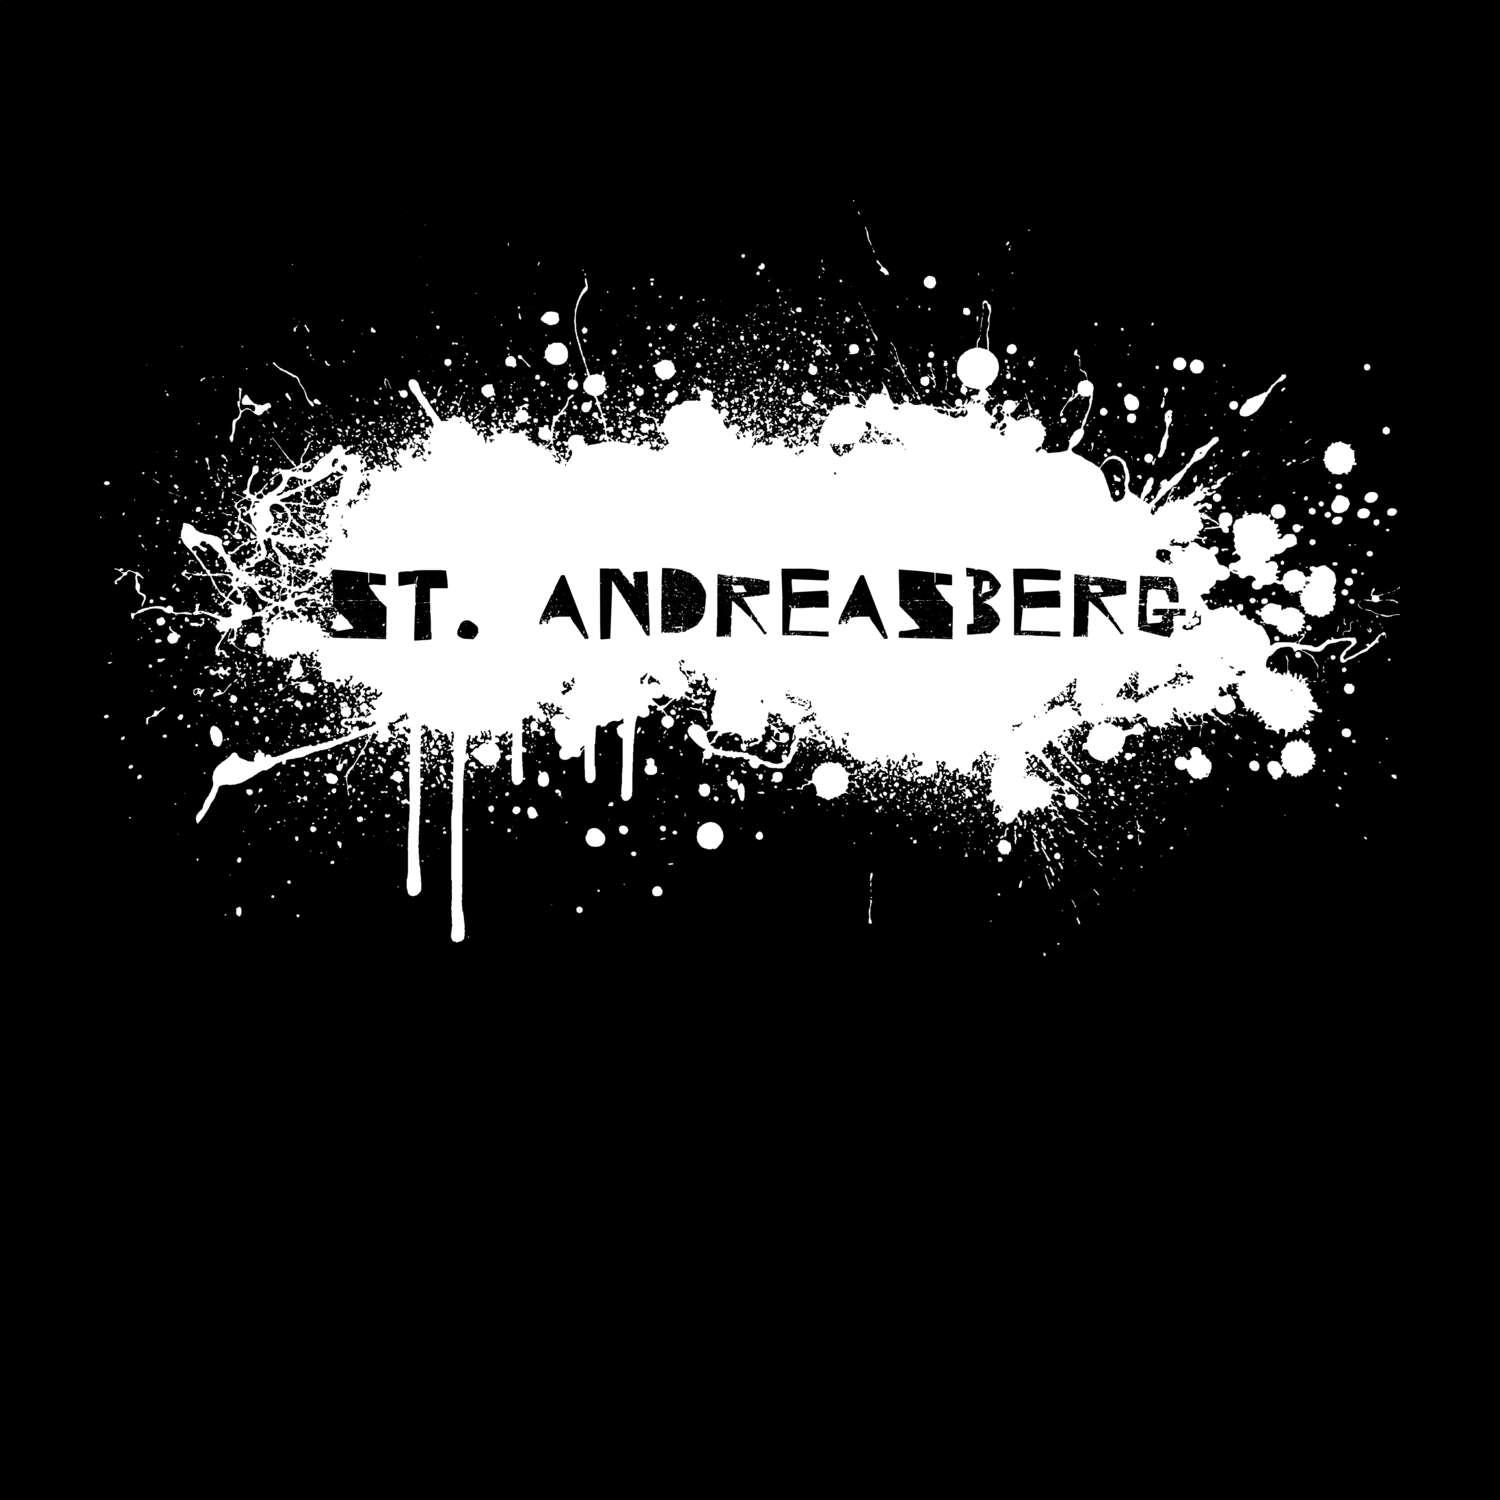 St. Andreasberg T-Shirt »Paint Splash Punk«